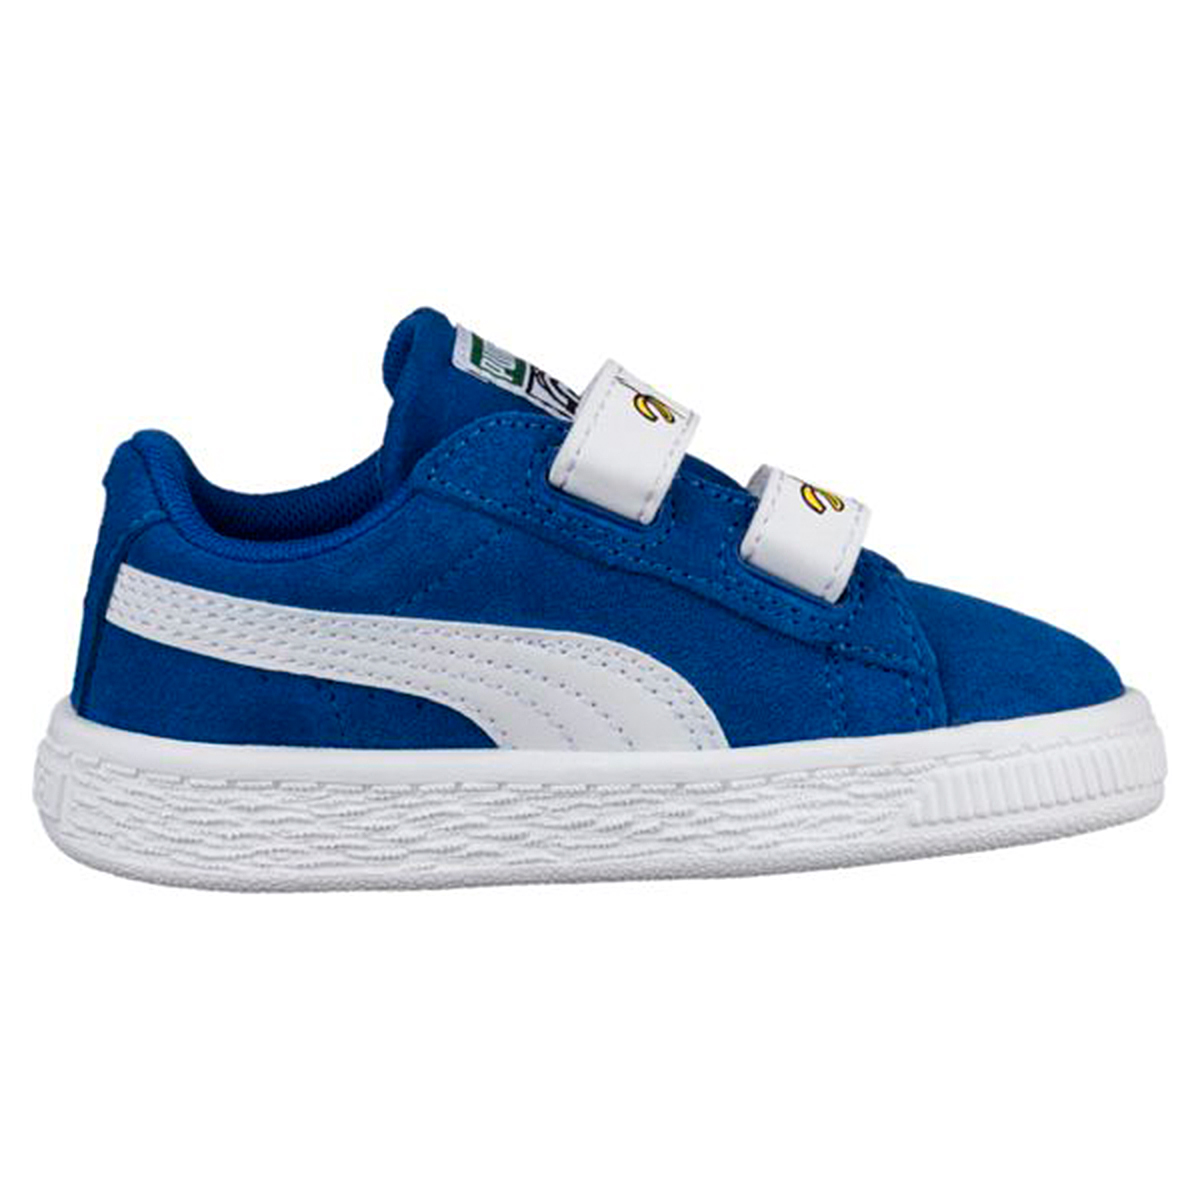 Puma Minions Suede V PS Kinder Sneaker Schuhe 365528 02 blau